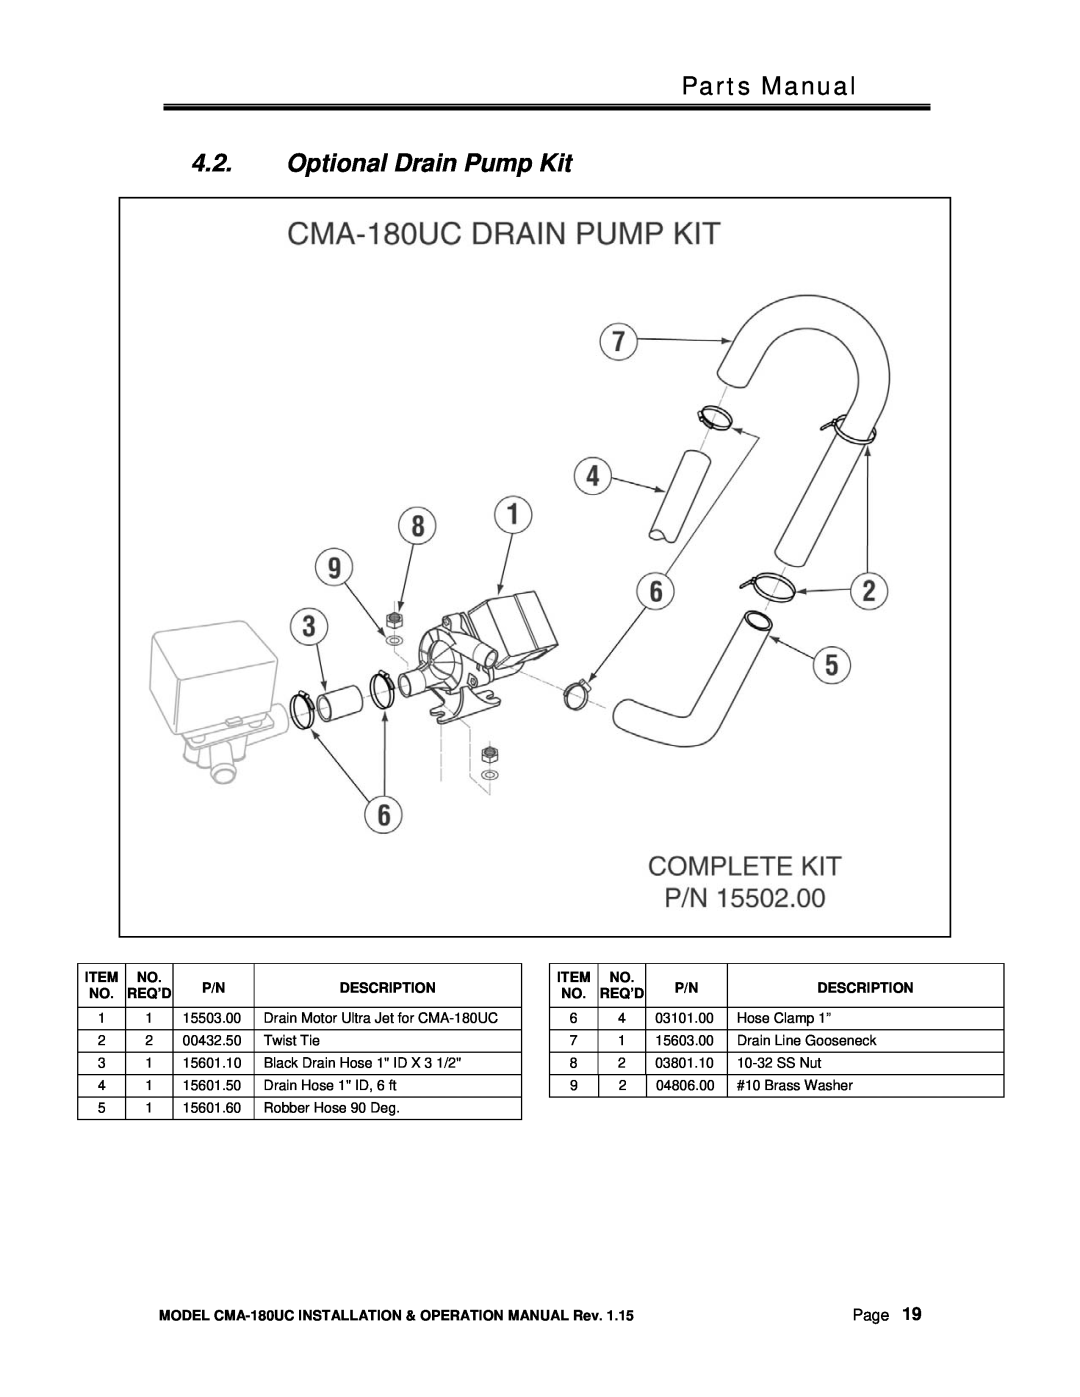 CMA Dishmachines CMA-180UC manual Parts Manual, Optional Drain Pump Kit, Page, Description, Req’D 